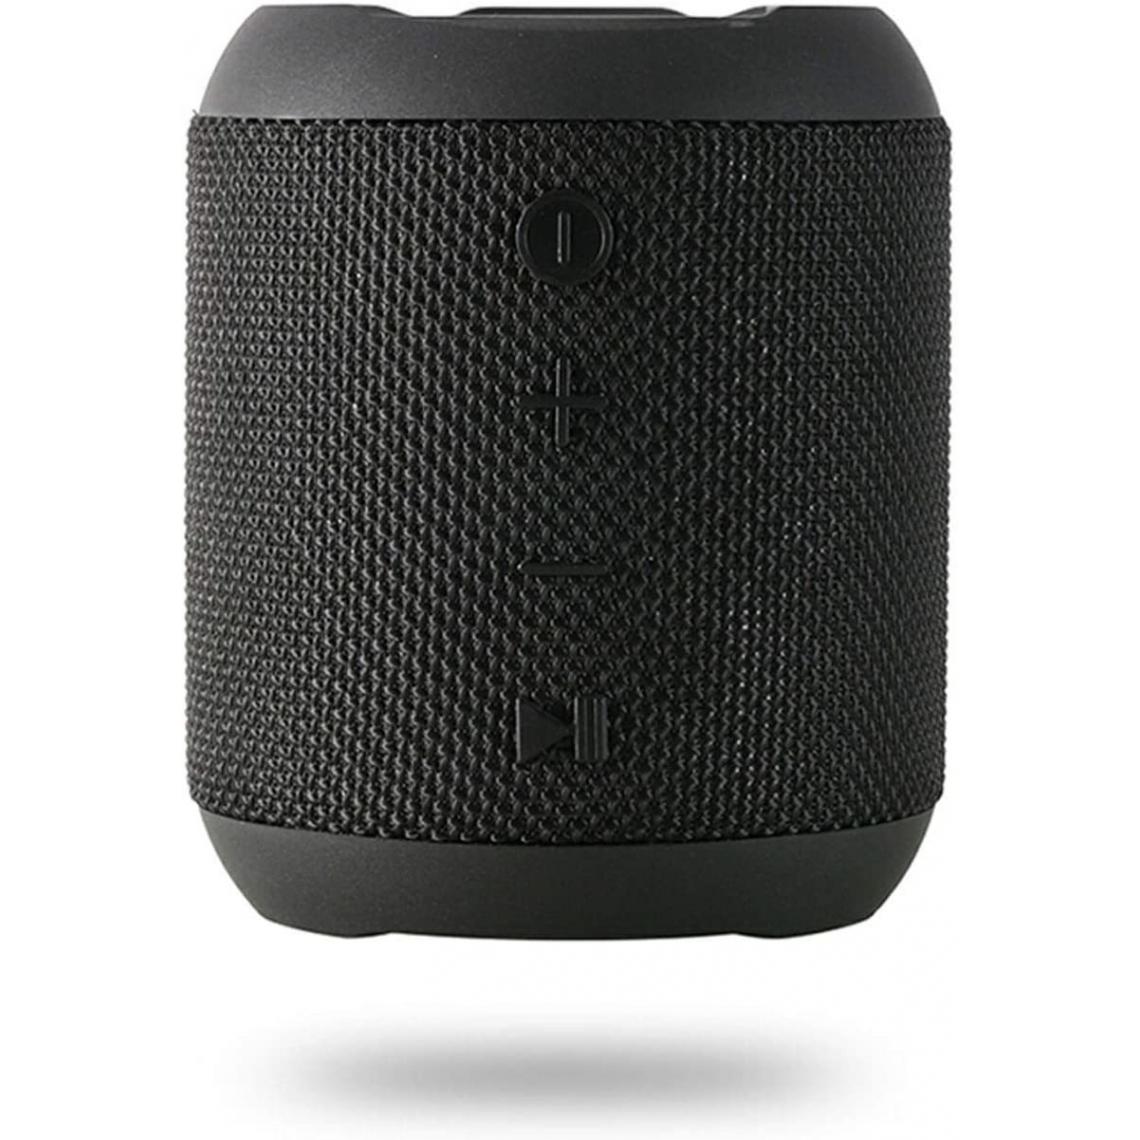 Chrono - Enceinte Bluetooth Portable, 20W Enceinte Bluetooth Waterproof Audio HD, TWS Haut-Parleur Bluetooth 5.0 Pilote Double avec Son 360°, 16 Heures Autonomie Mains Libres Téléphone Support FM, AUX, TF(Noir) - Enceintes Hifi